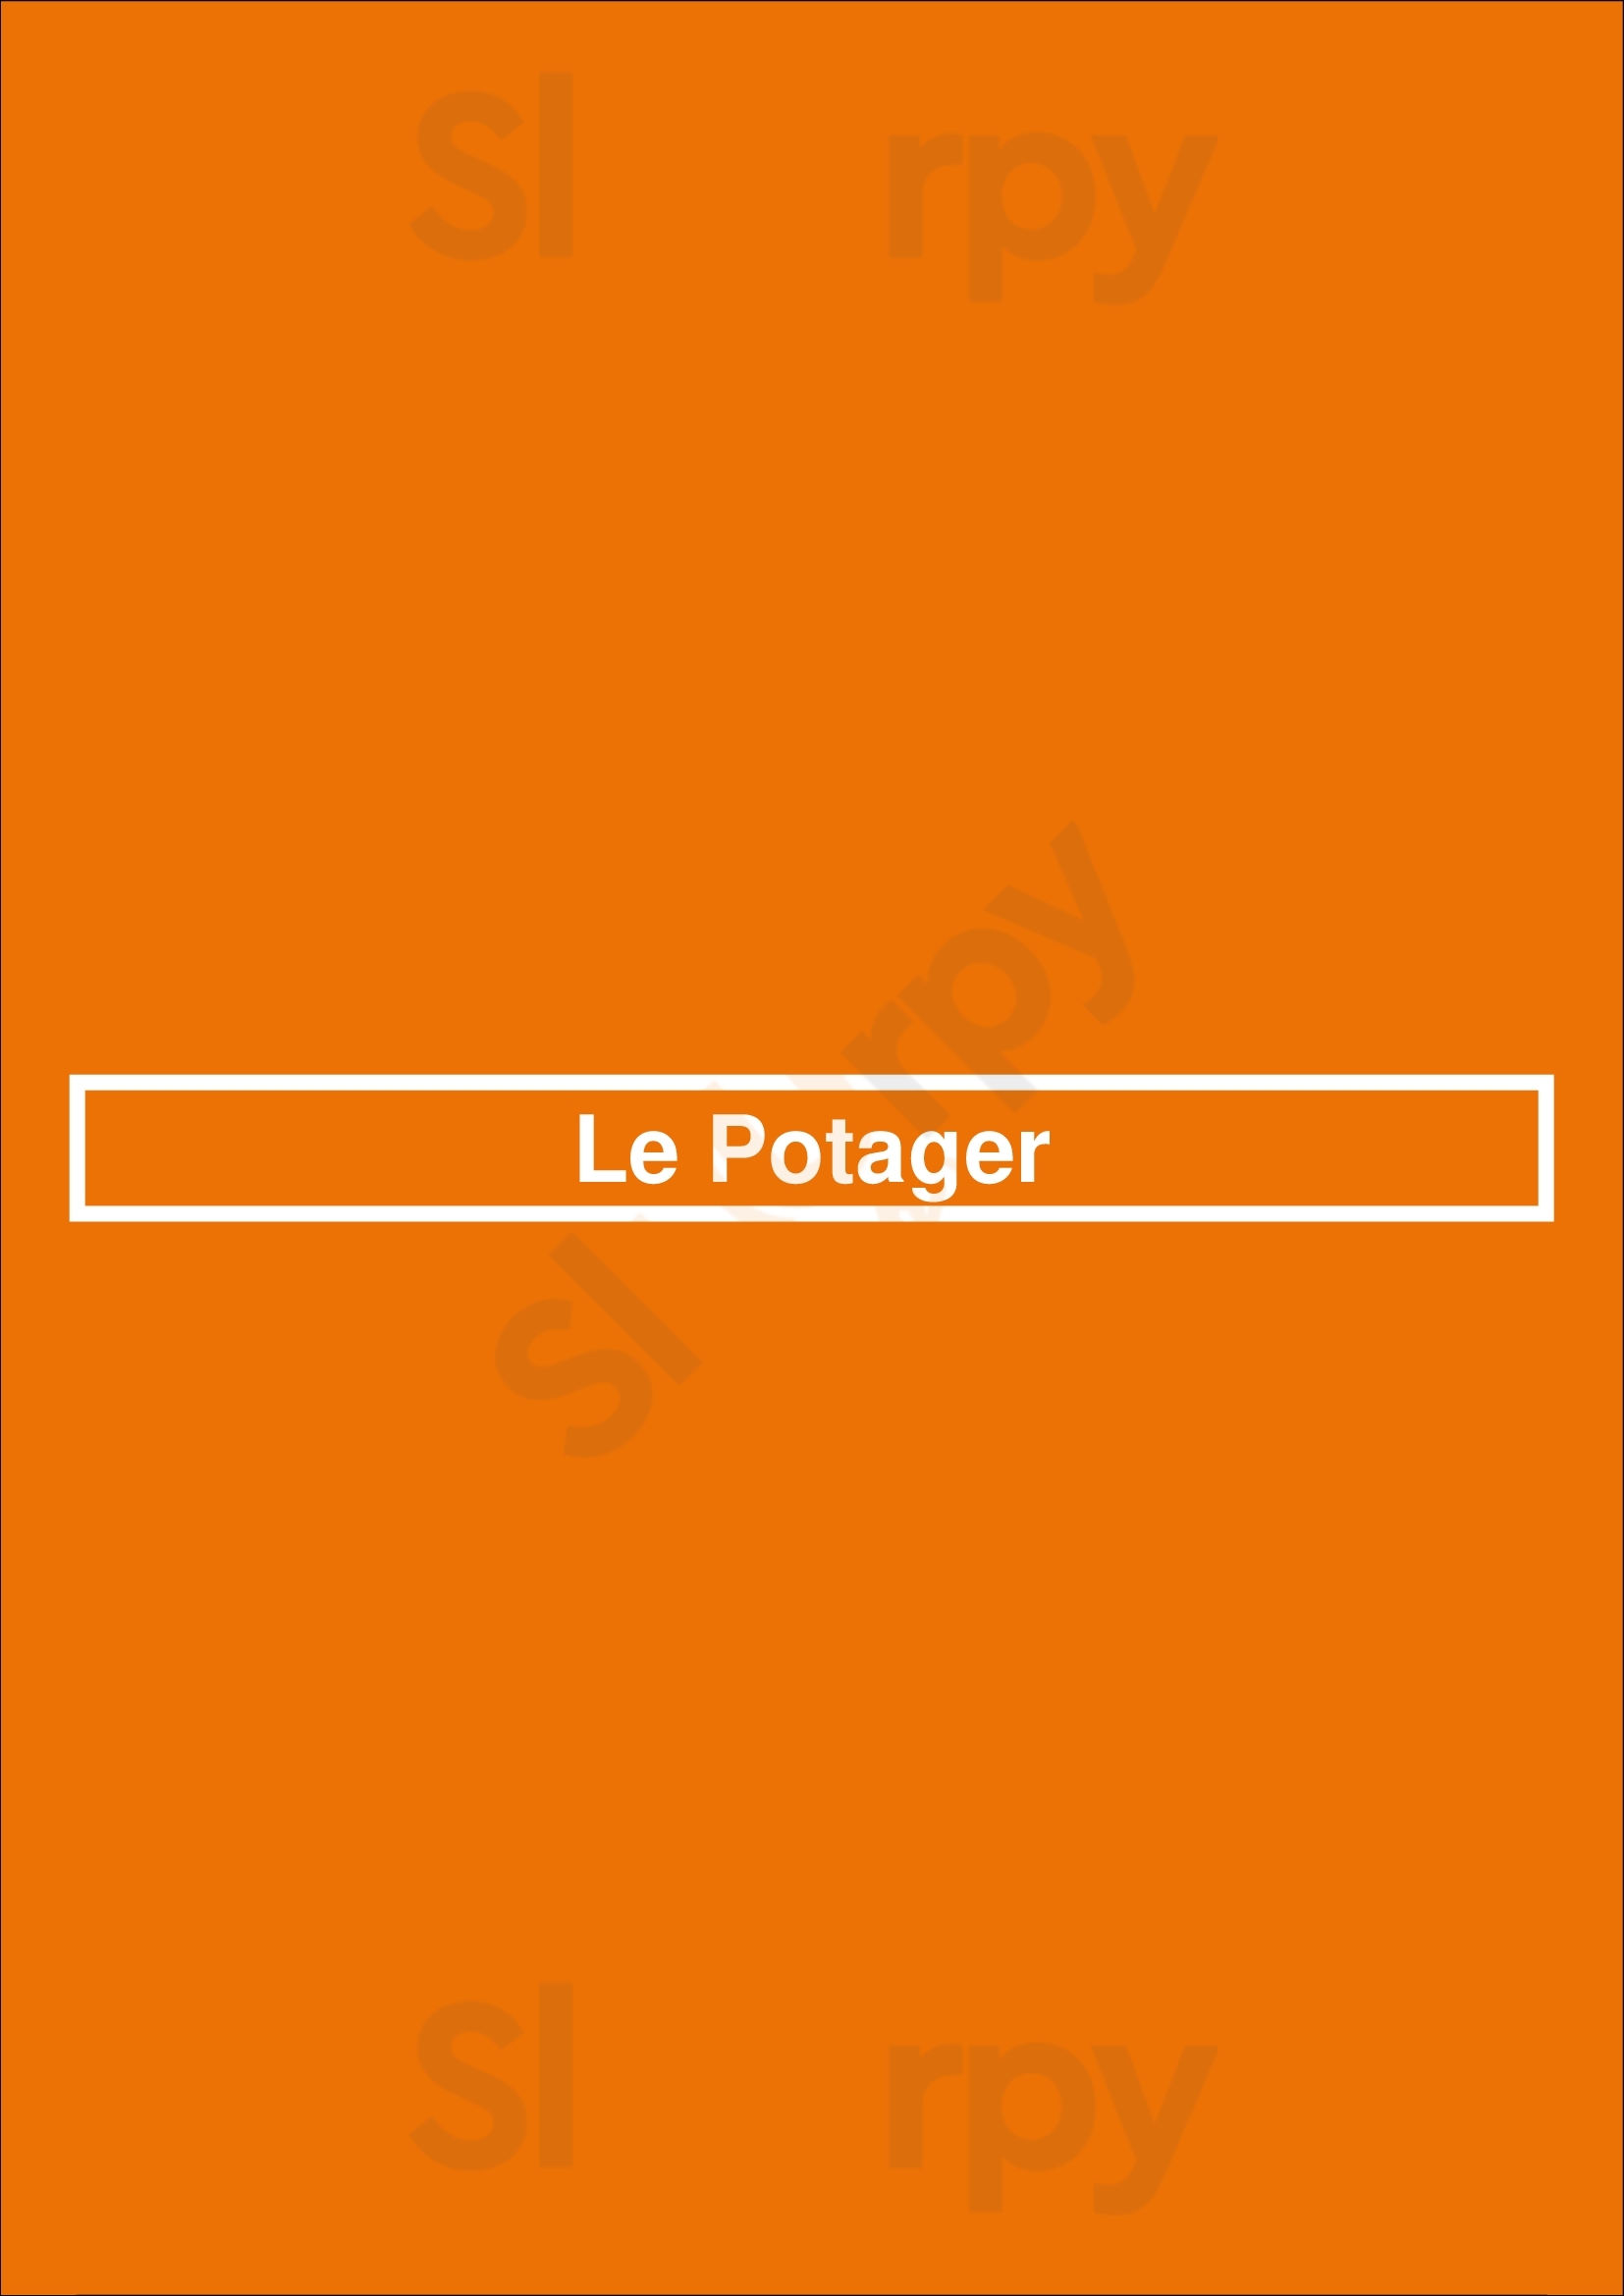 Le Potager Bordeaux Menu - 1